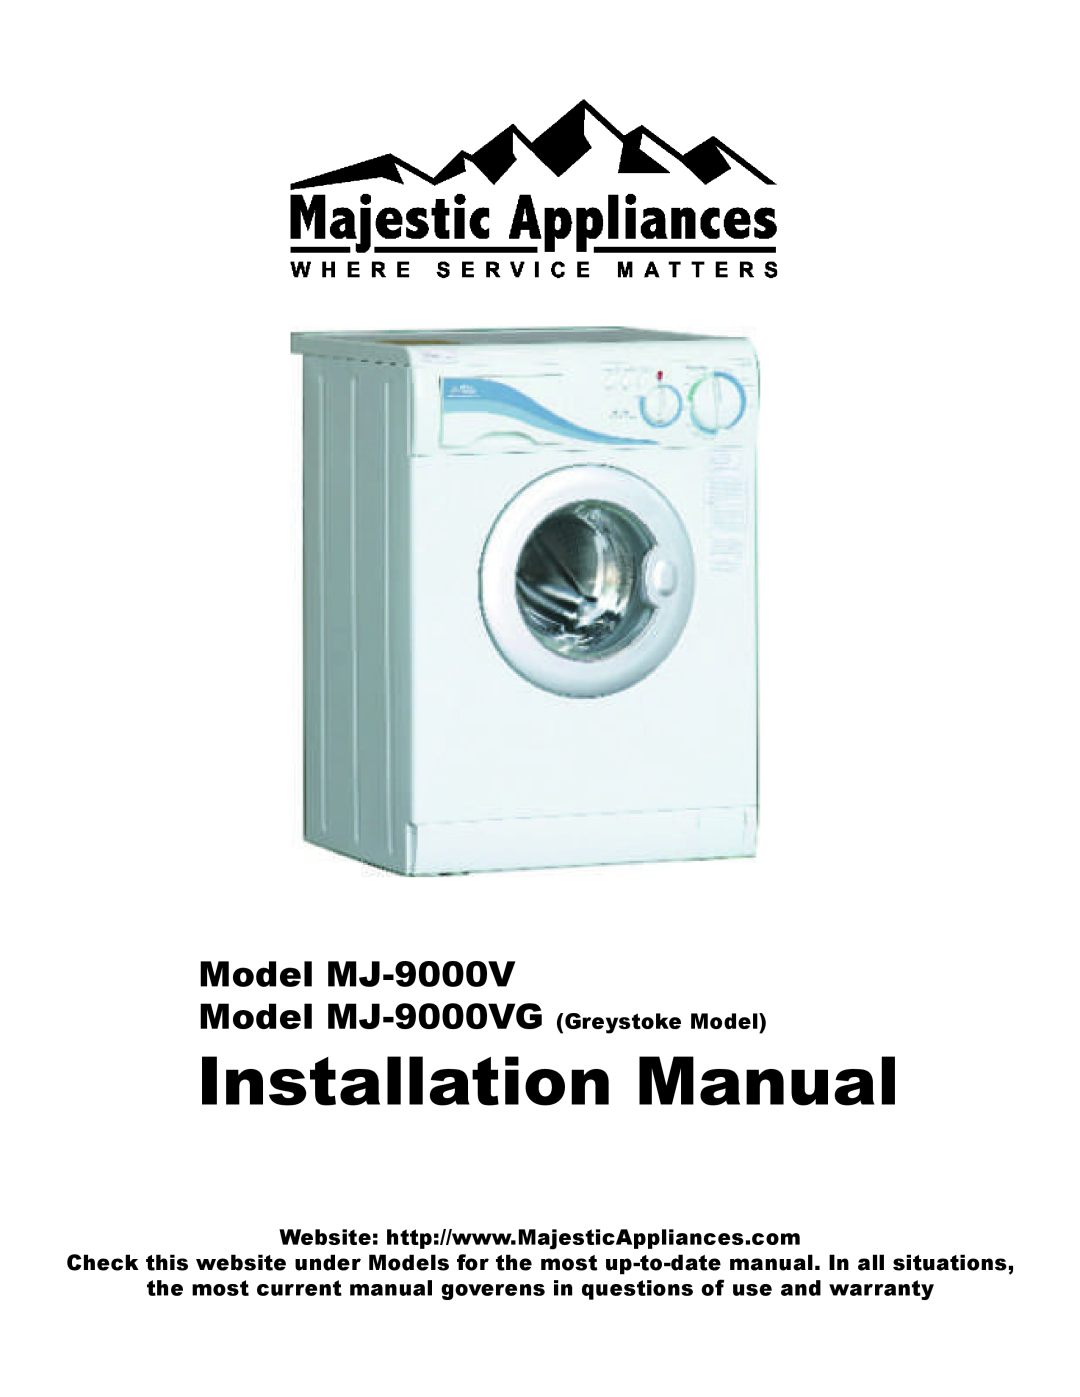 Equator installation manual Installation Manual, Model MJ-9000VG Greystoke Model 